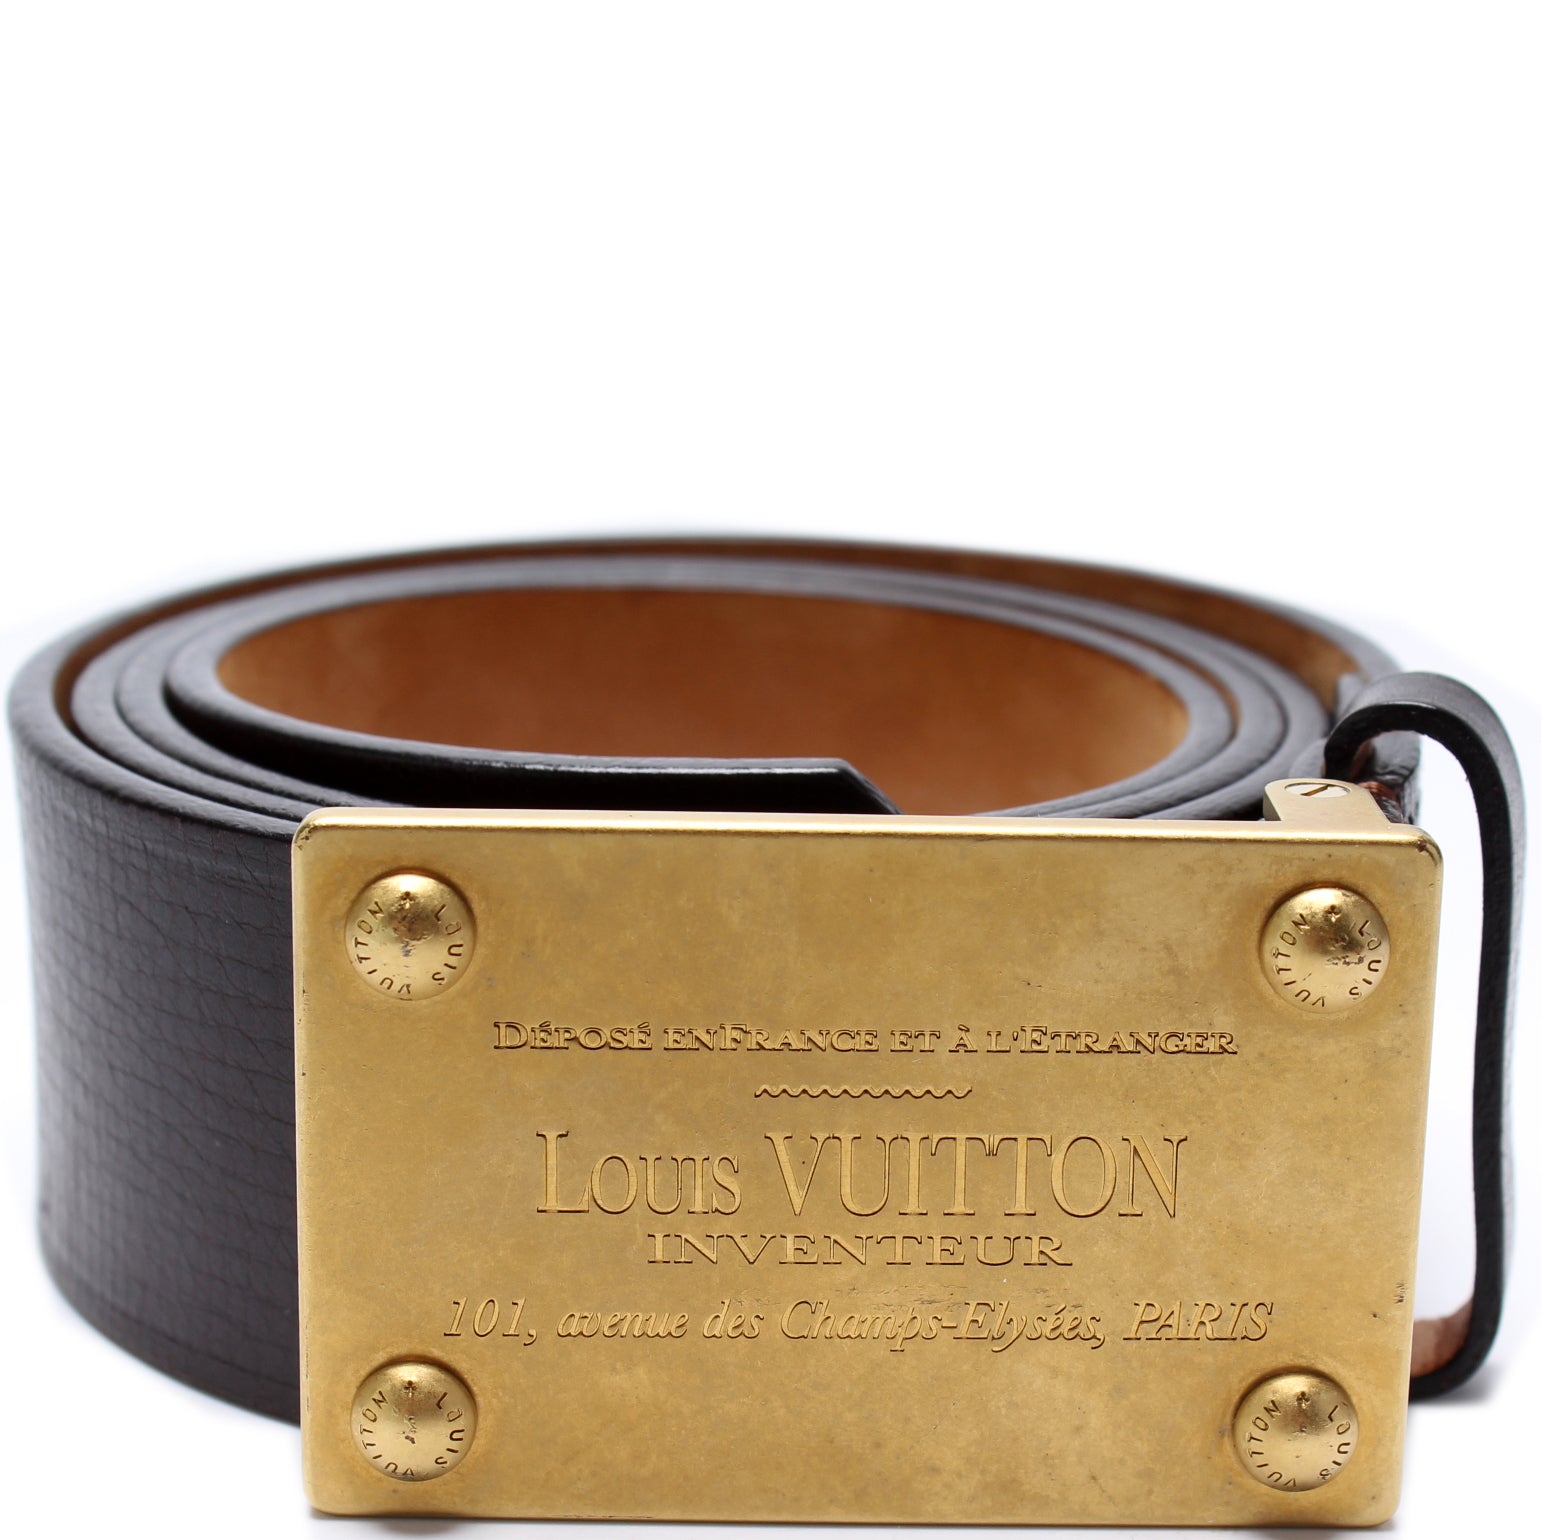 Women's Louis Vuitton Belts from $234